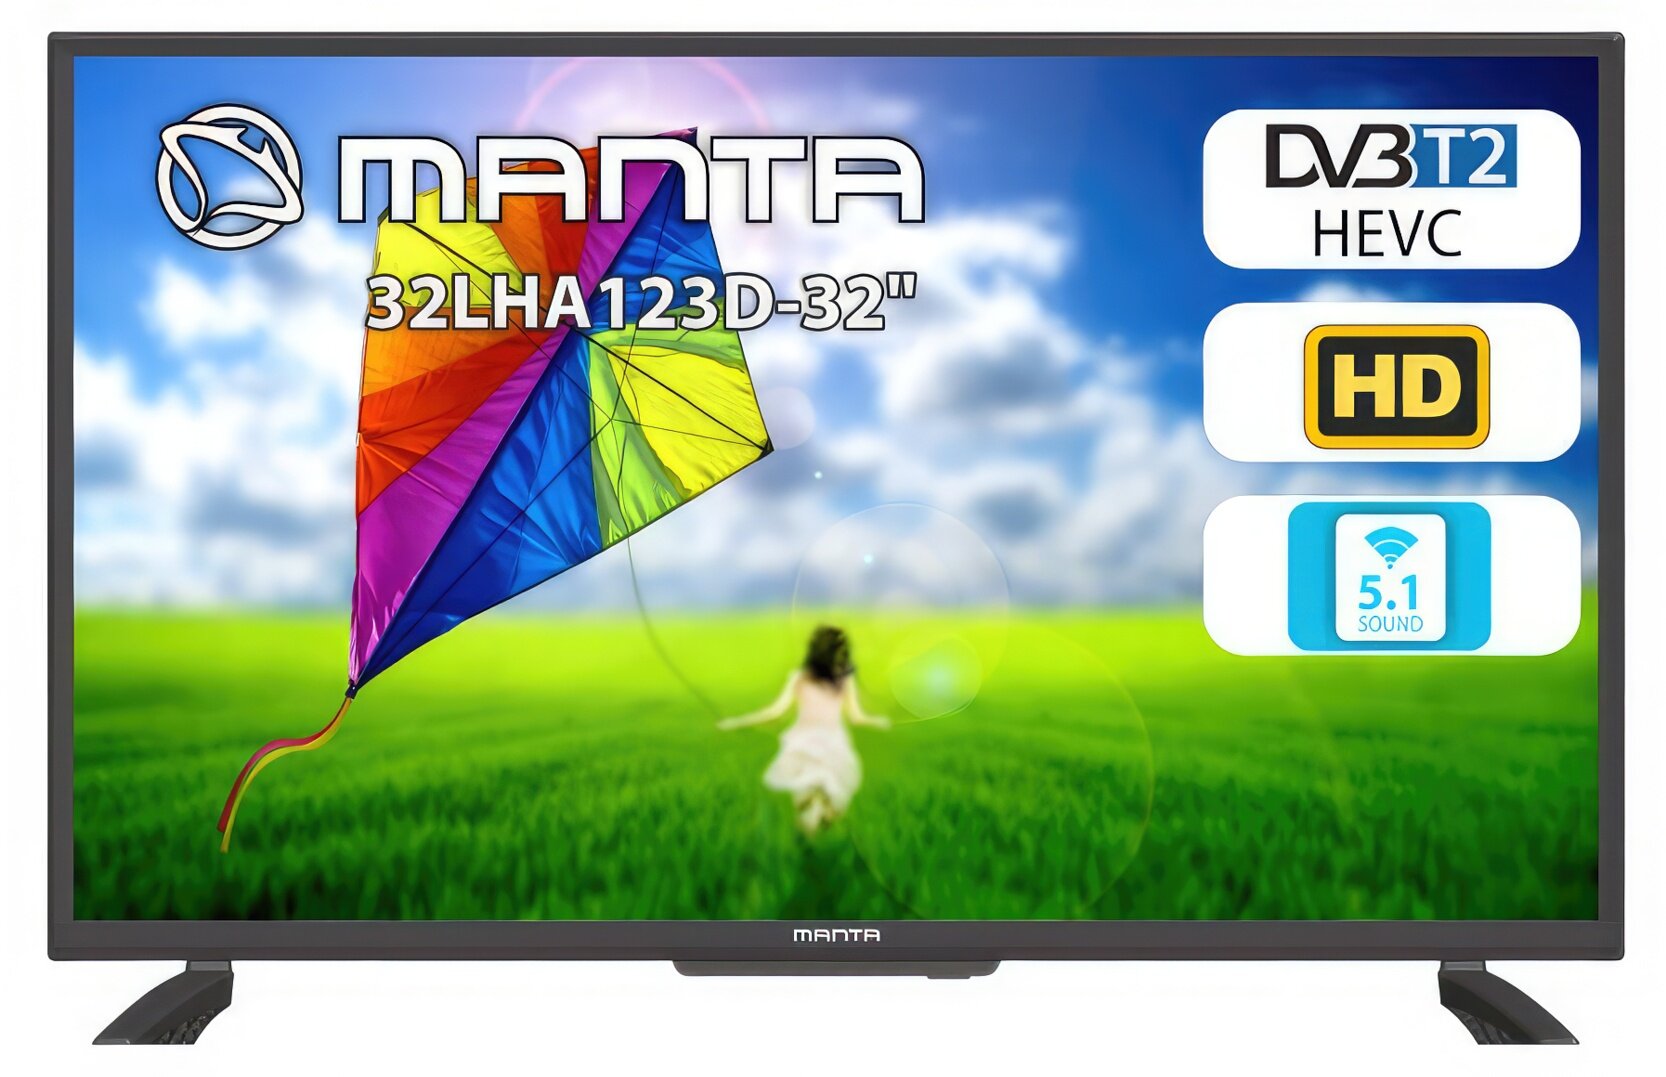 Telewizor Manta 32LHA123D 32" HD Ready